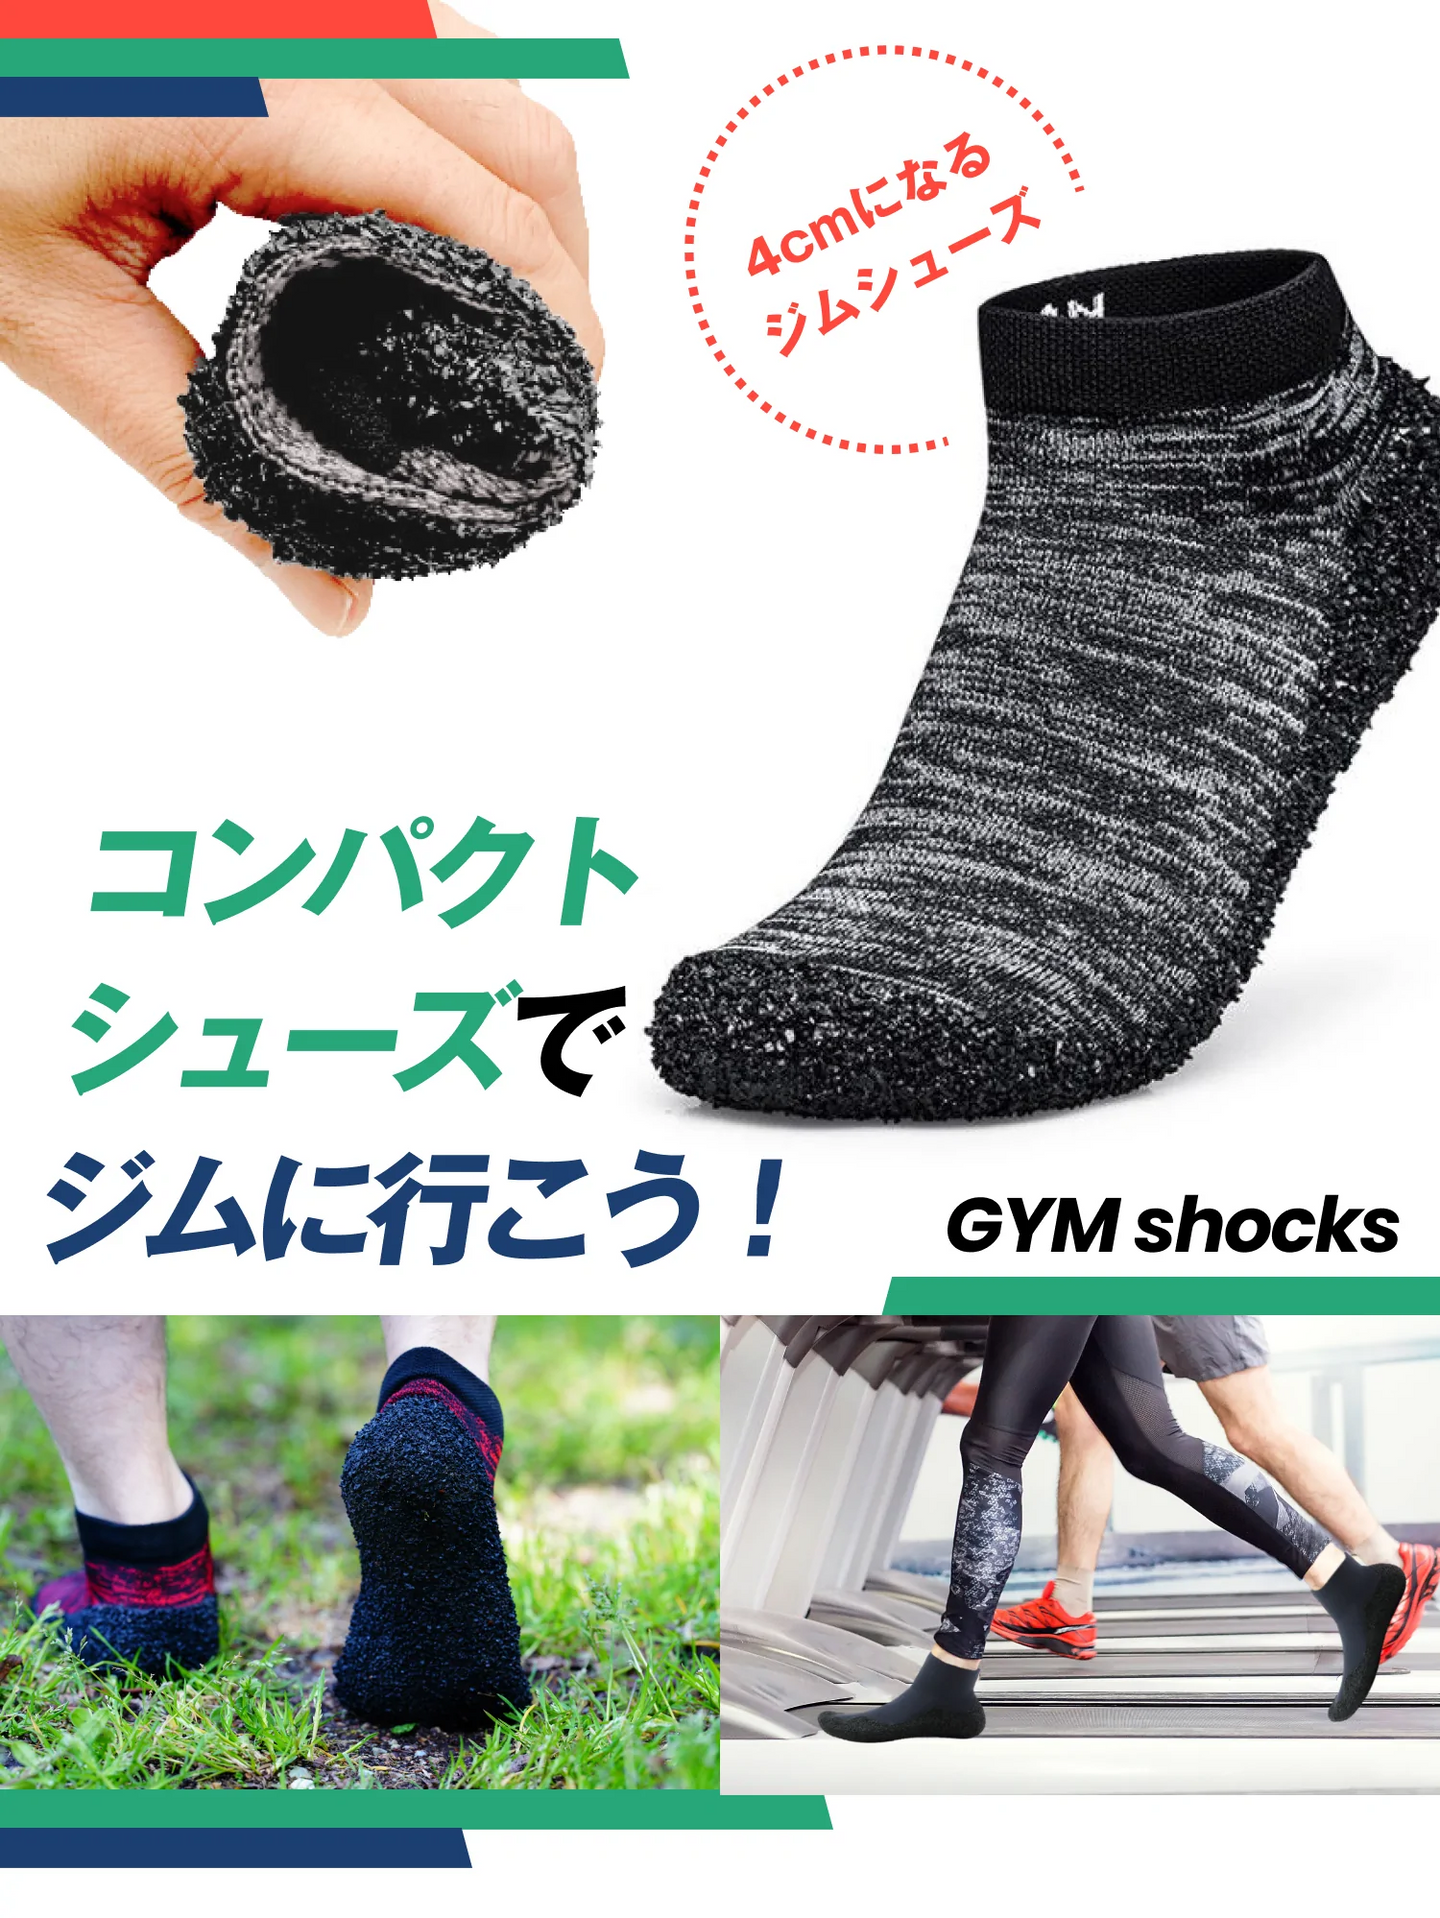 靴下と靴のいいとこどり！洗えて丈夫な ポータブルシューズ『GYM Shocks』【GS01-SA】